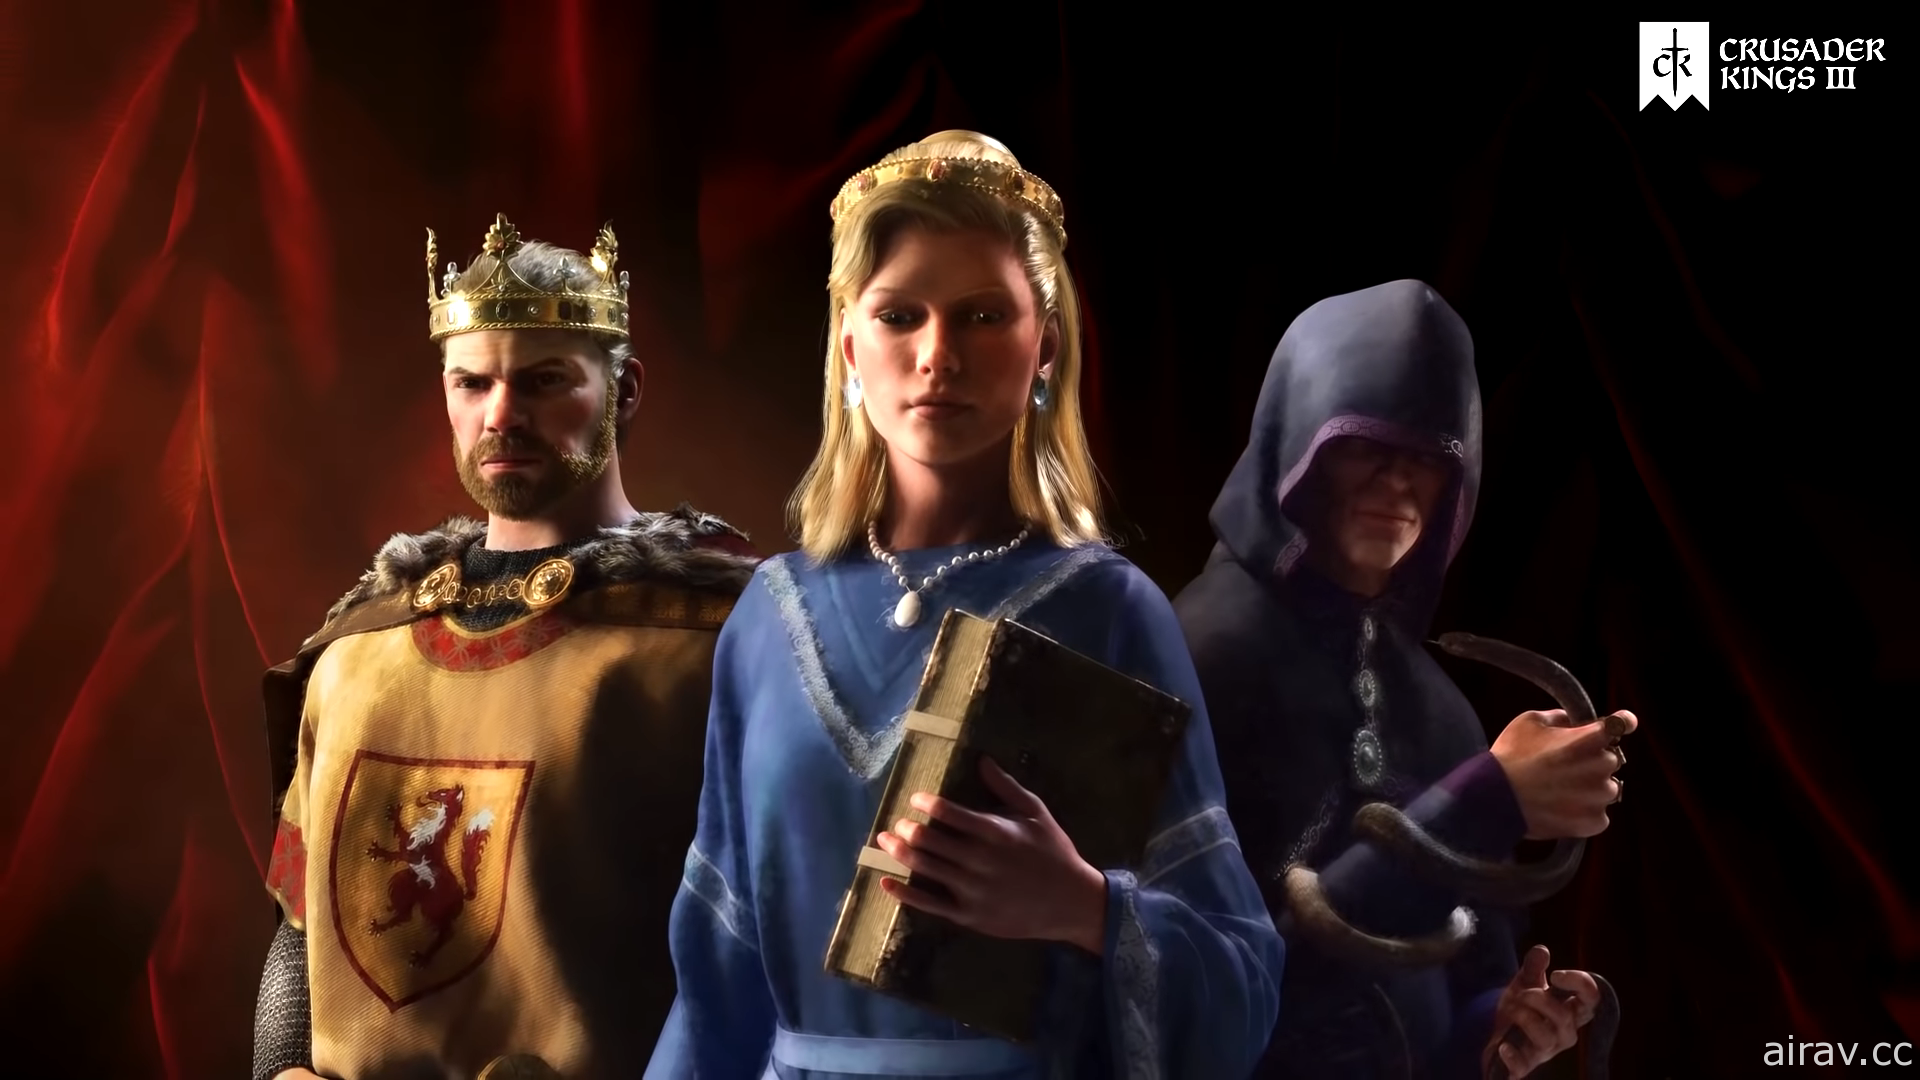 策略游戏系列新作《十字军王者 3》今日上市 努力让皇室繁荣兴盛